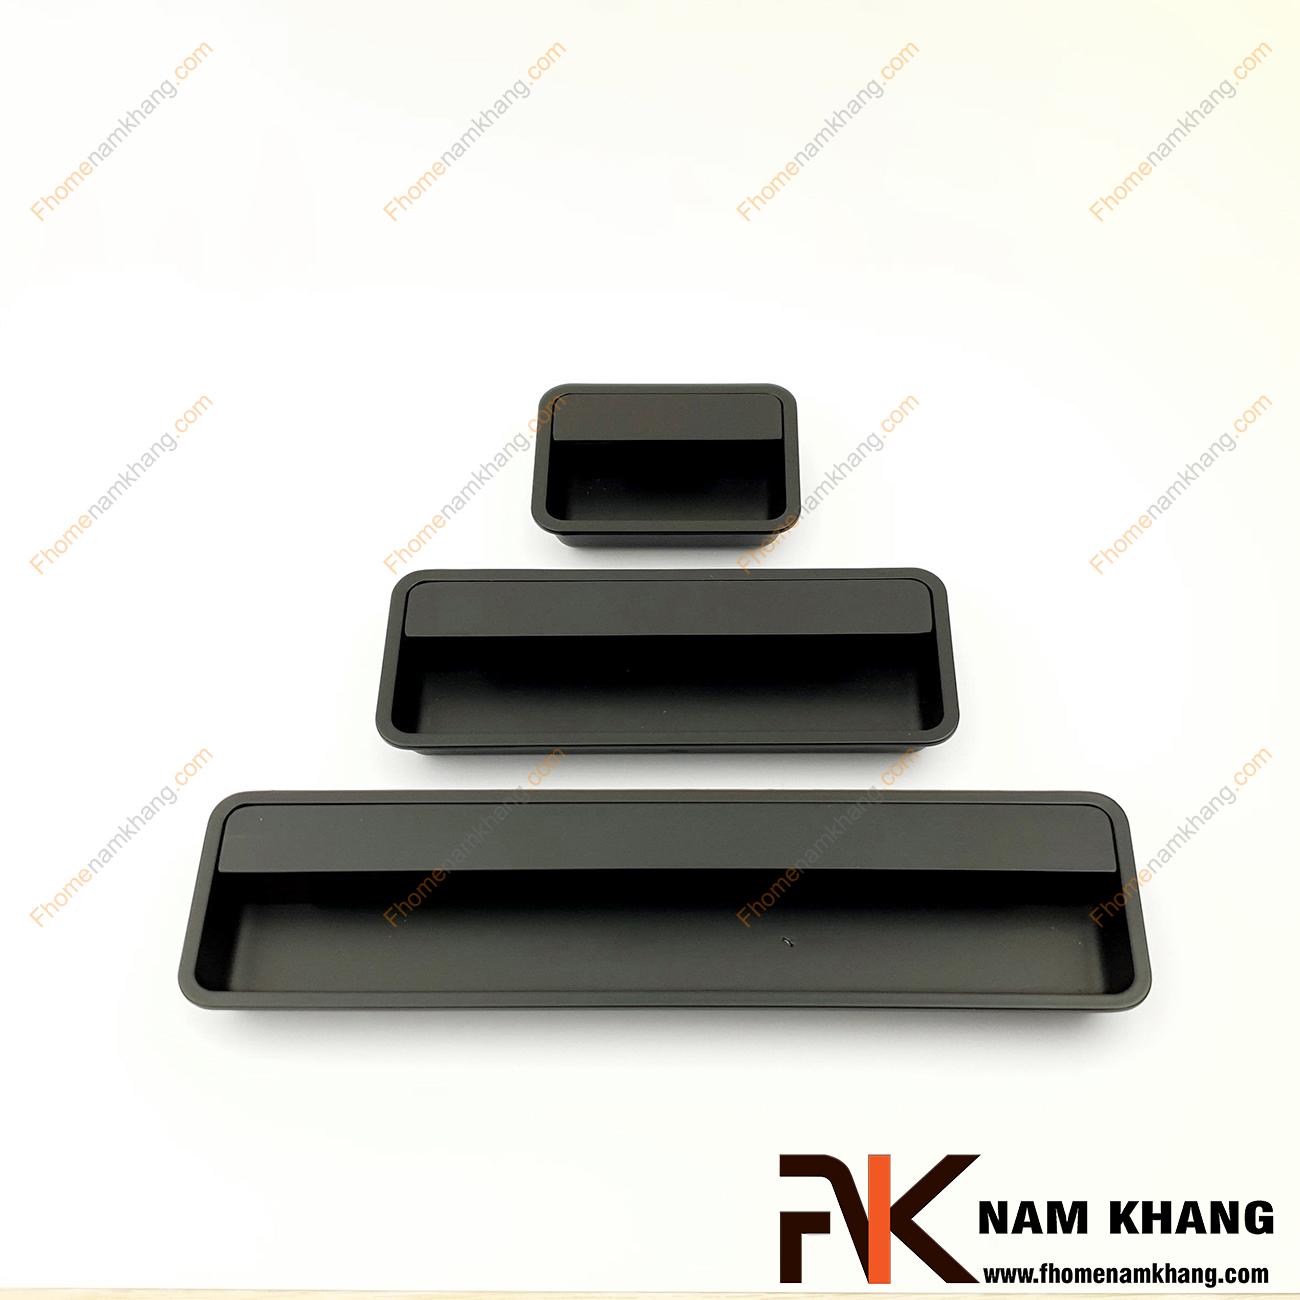 Tay nắm âm tủ màu đen NK462-D là loại tay nắm chuyên dùng cho các loại tủ đặt ở những nơi có không gian hạn chế hoặc dùng để nâng cao tính thẫm mỹ của sản phẩm.